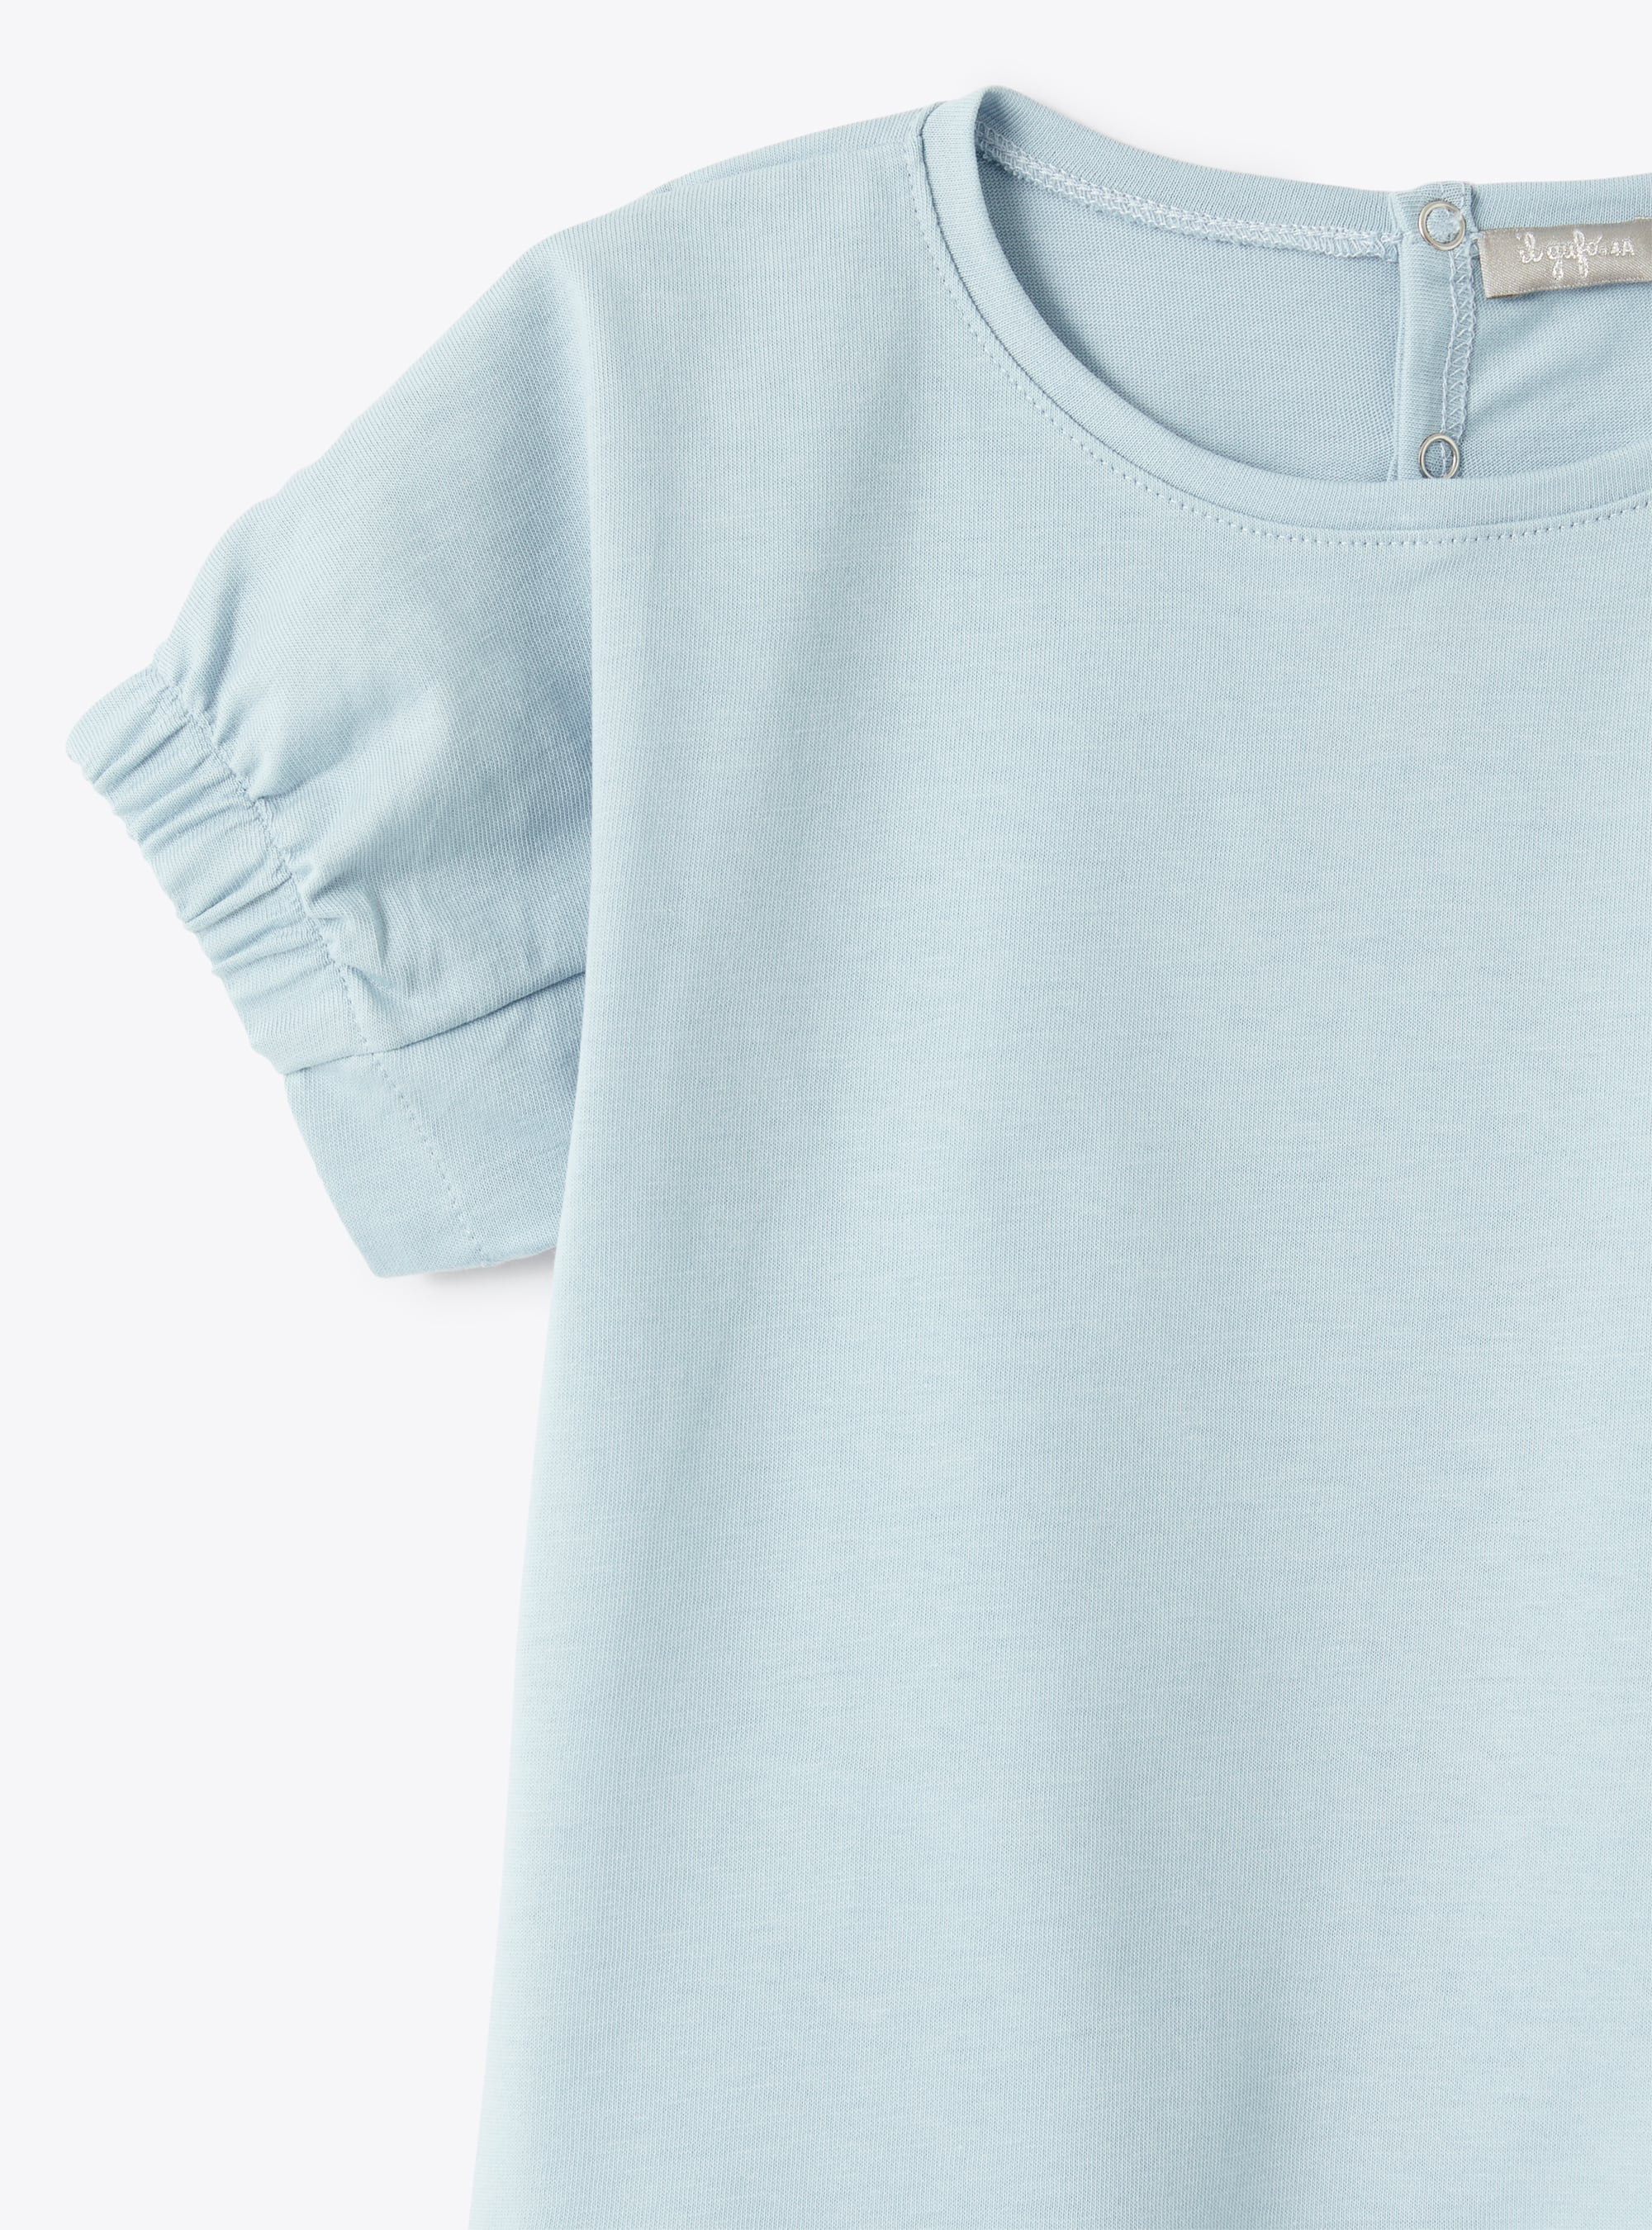 T-shirt celeste a manica corta celeste - Azzurro | Il Gufo